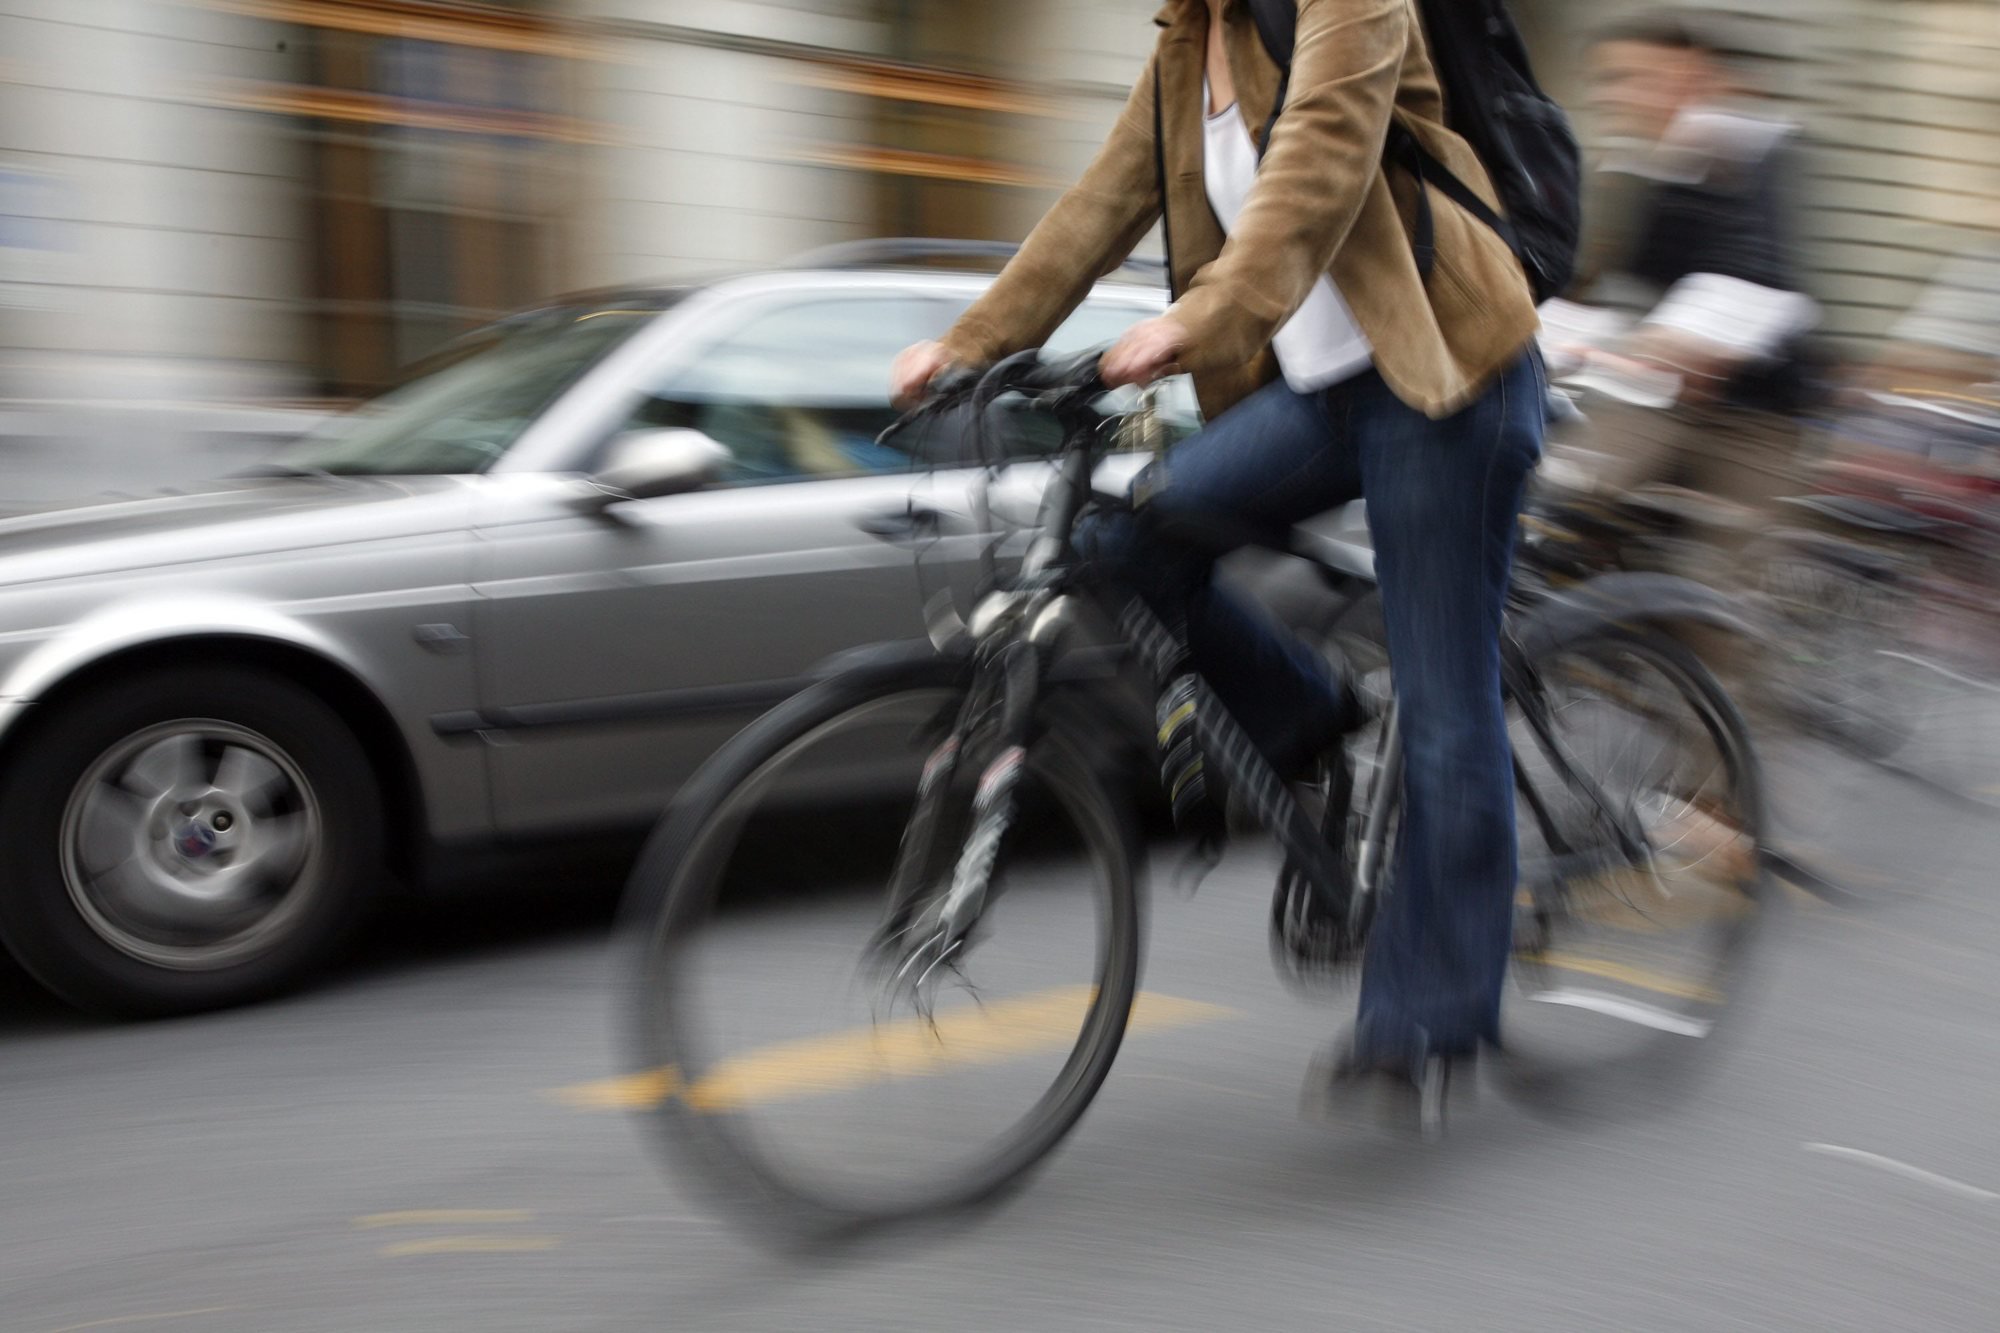 En Suisse, 7% des déplacements se font à vélo, contre 28% aux Pays-Bas.